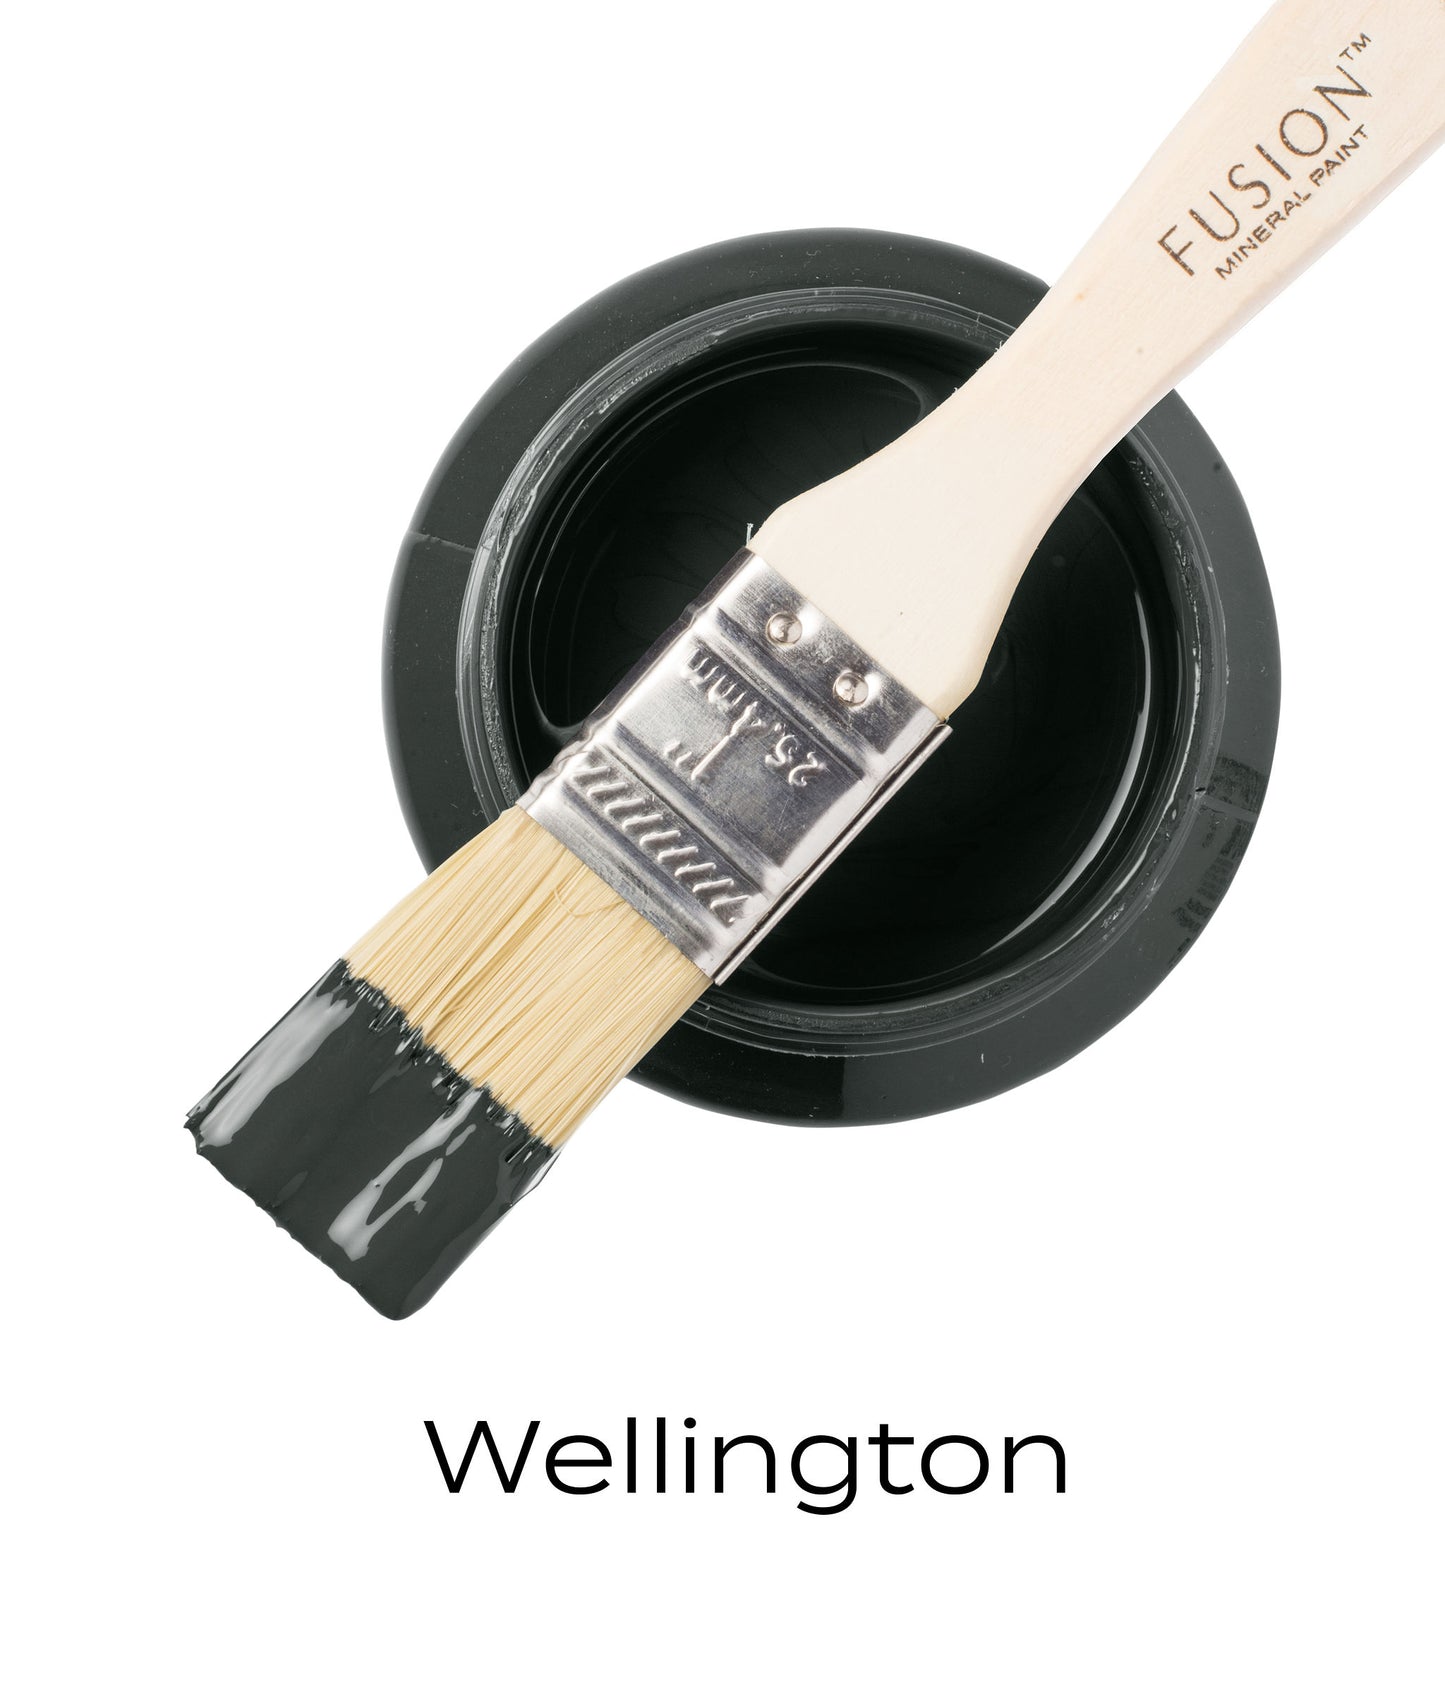 Wellington -Fusion Mineral Paint